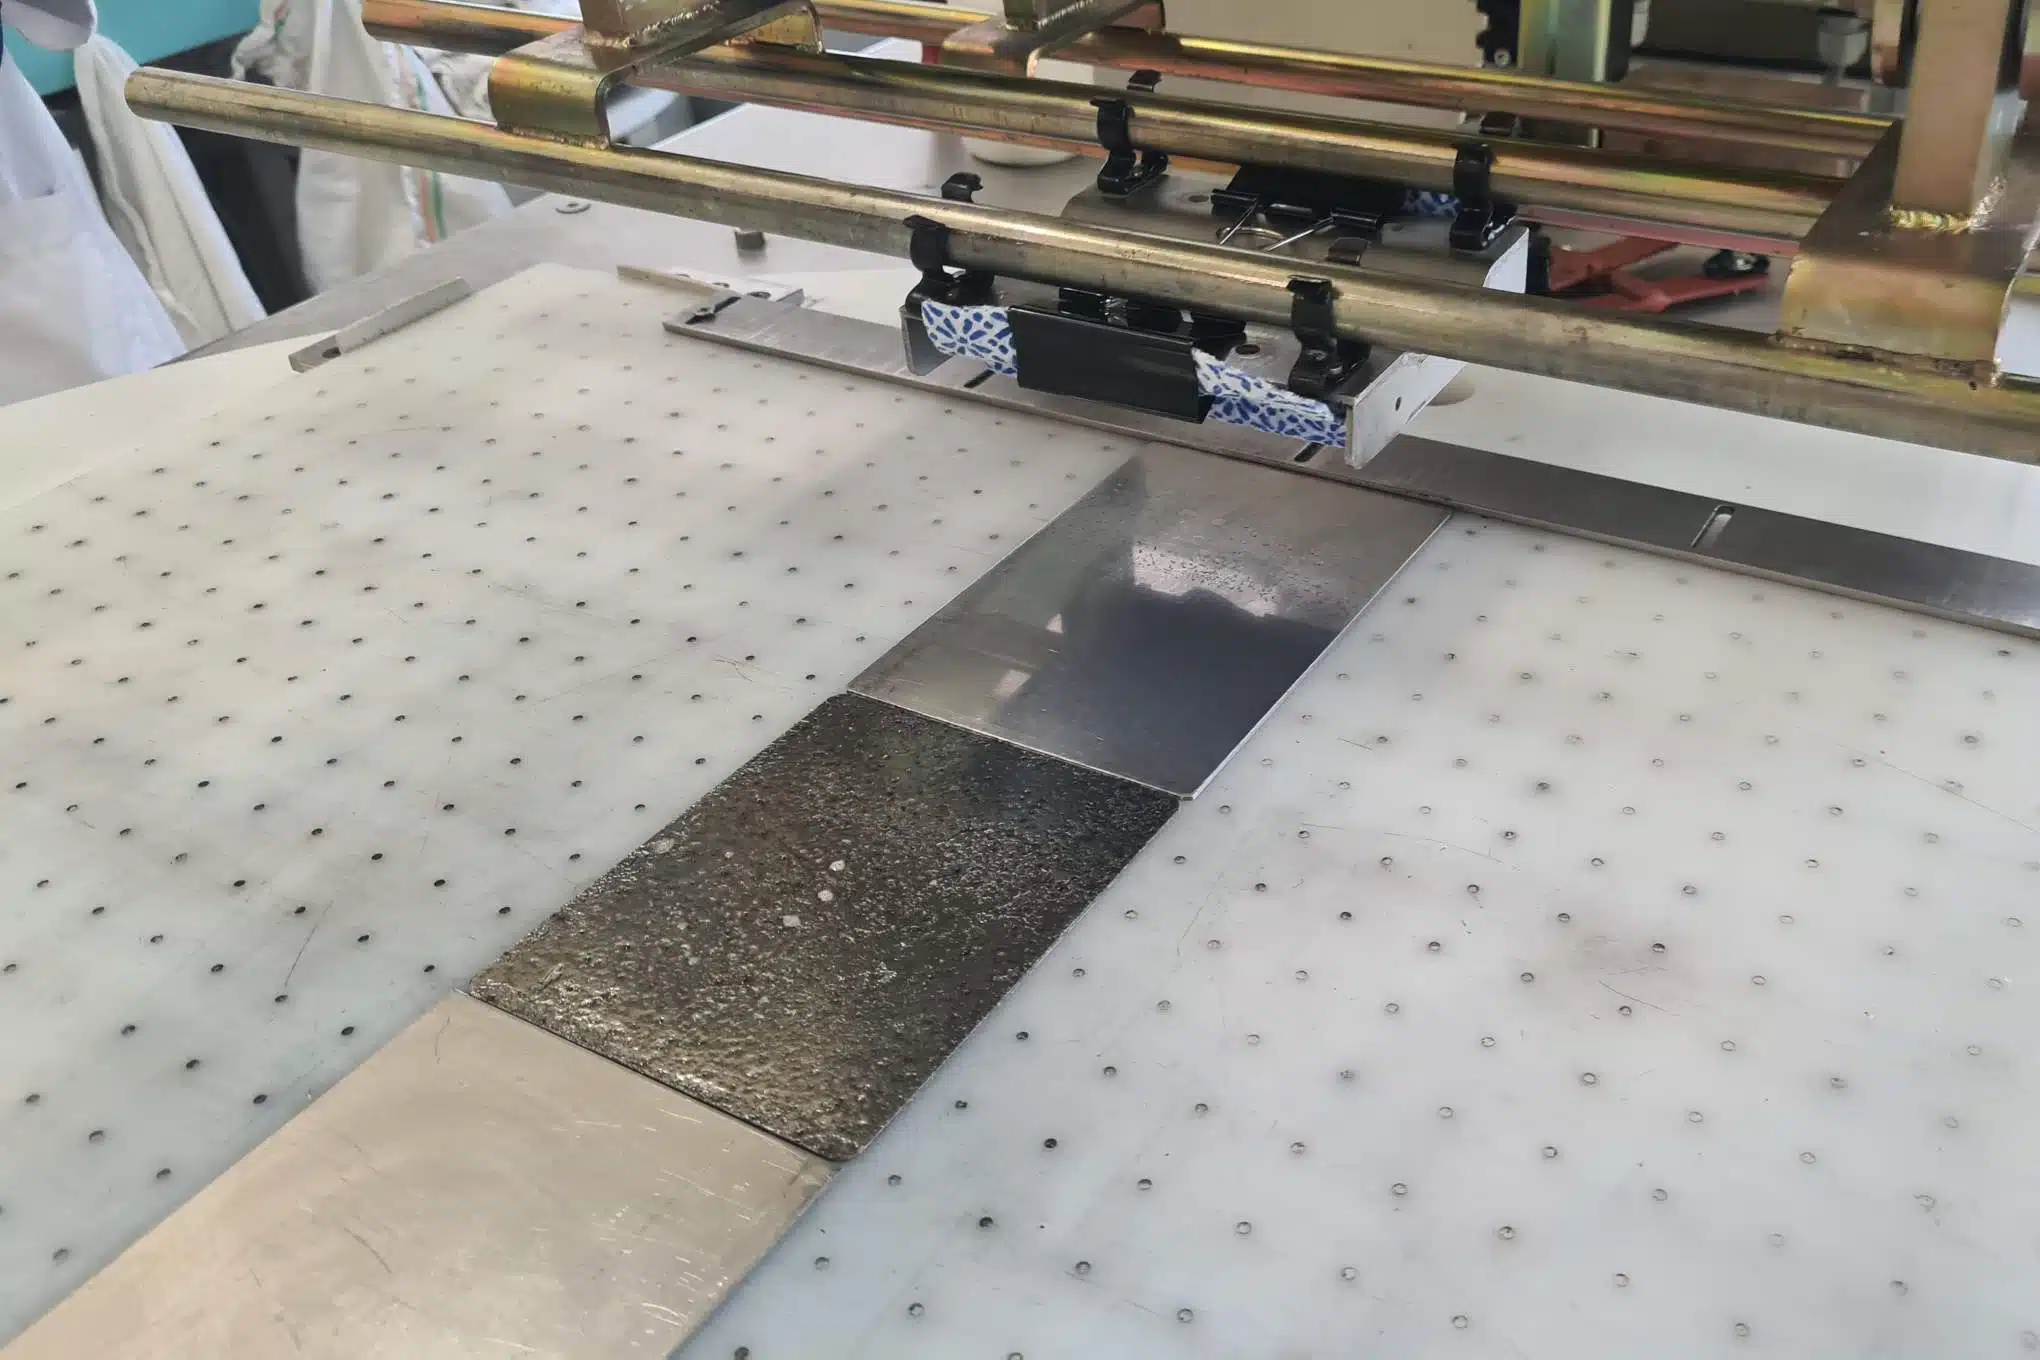 Eri pintamateriaalista valmistettuja suorakulmion muotoisia paloja kiinnitettynä pöytään ja testauslaitteistoa.